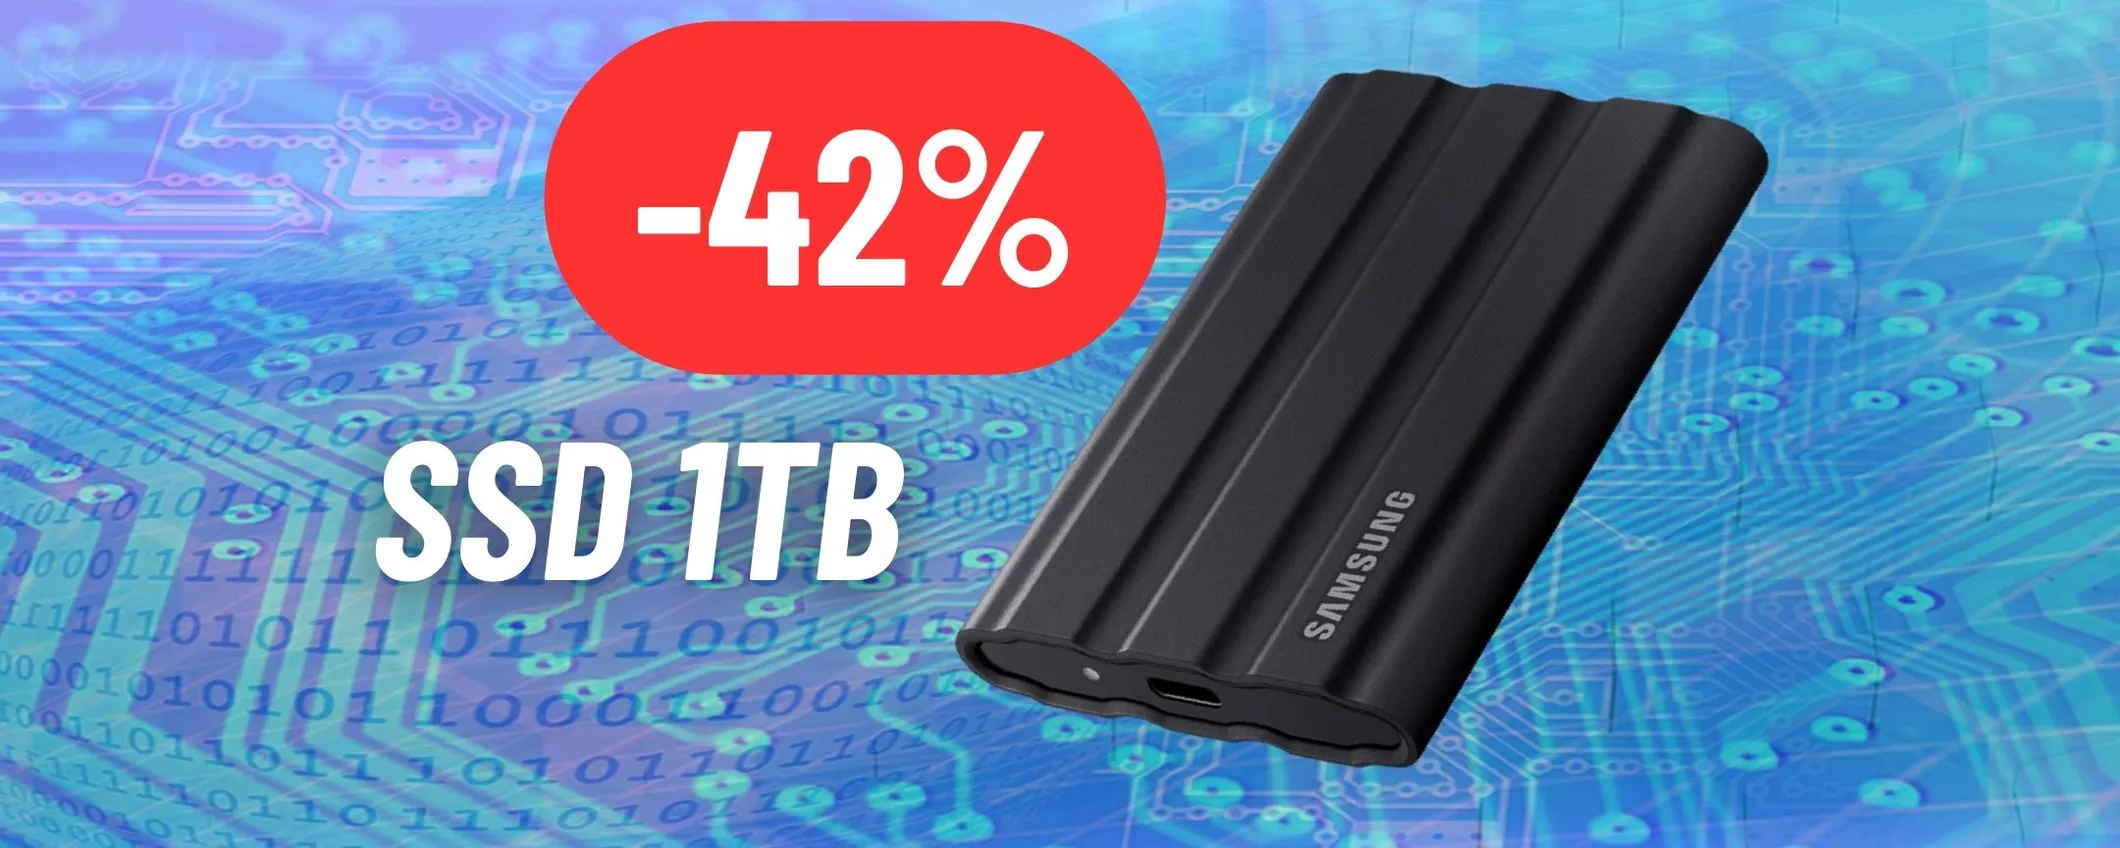 1TB di storage ovunque con l'SSD esterno Samsung al 42% di sconto